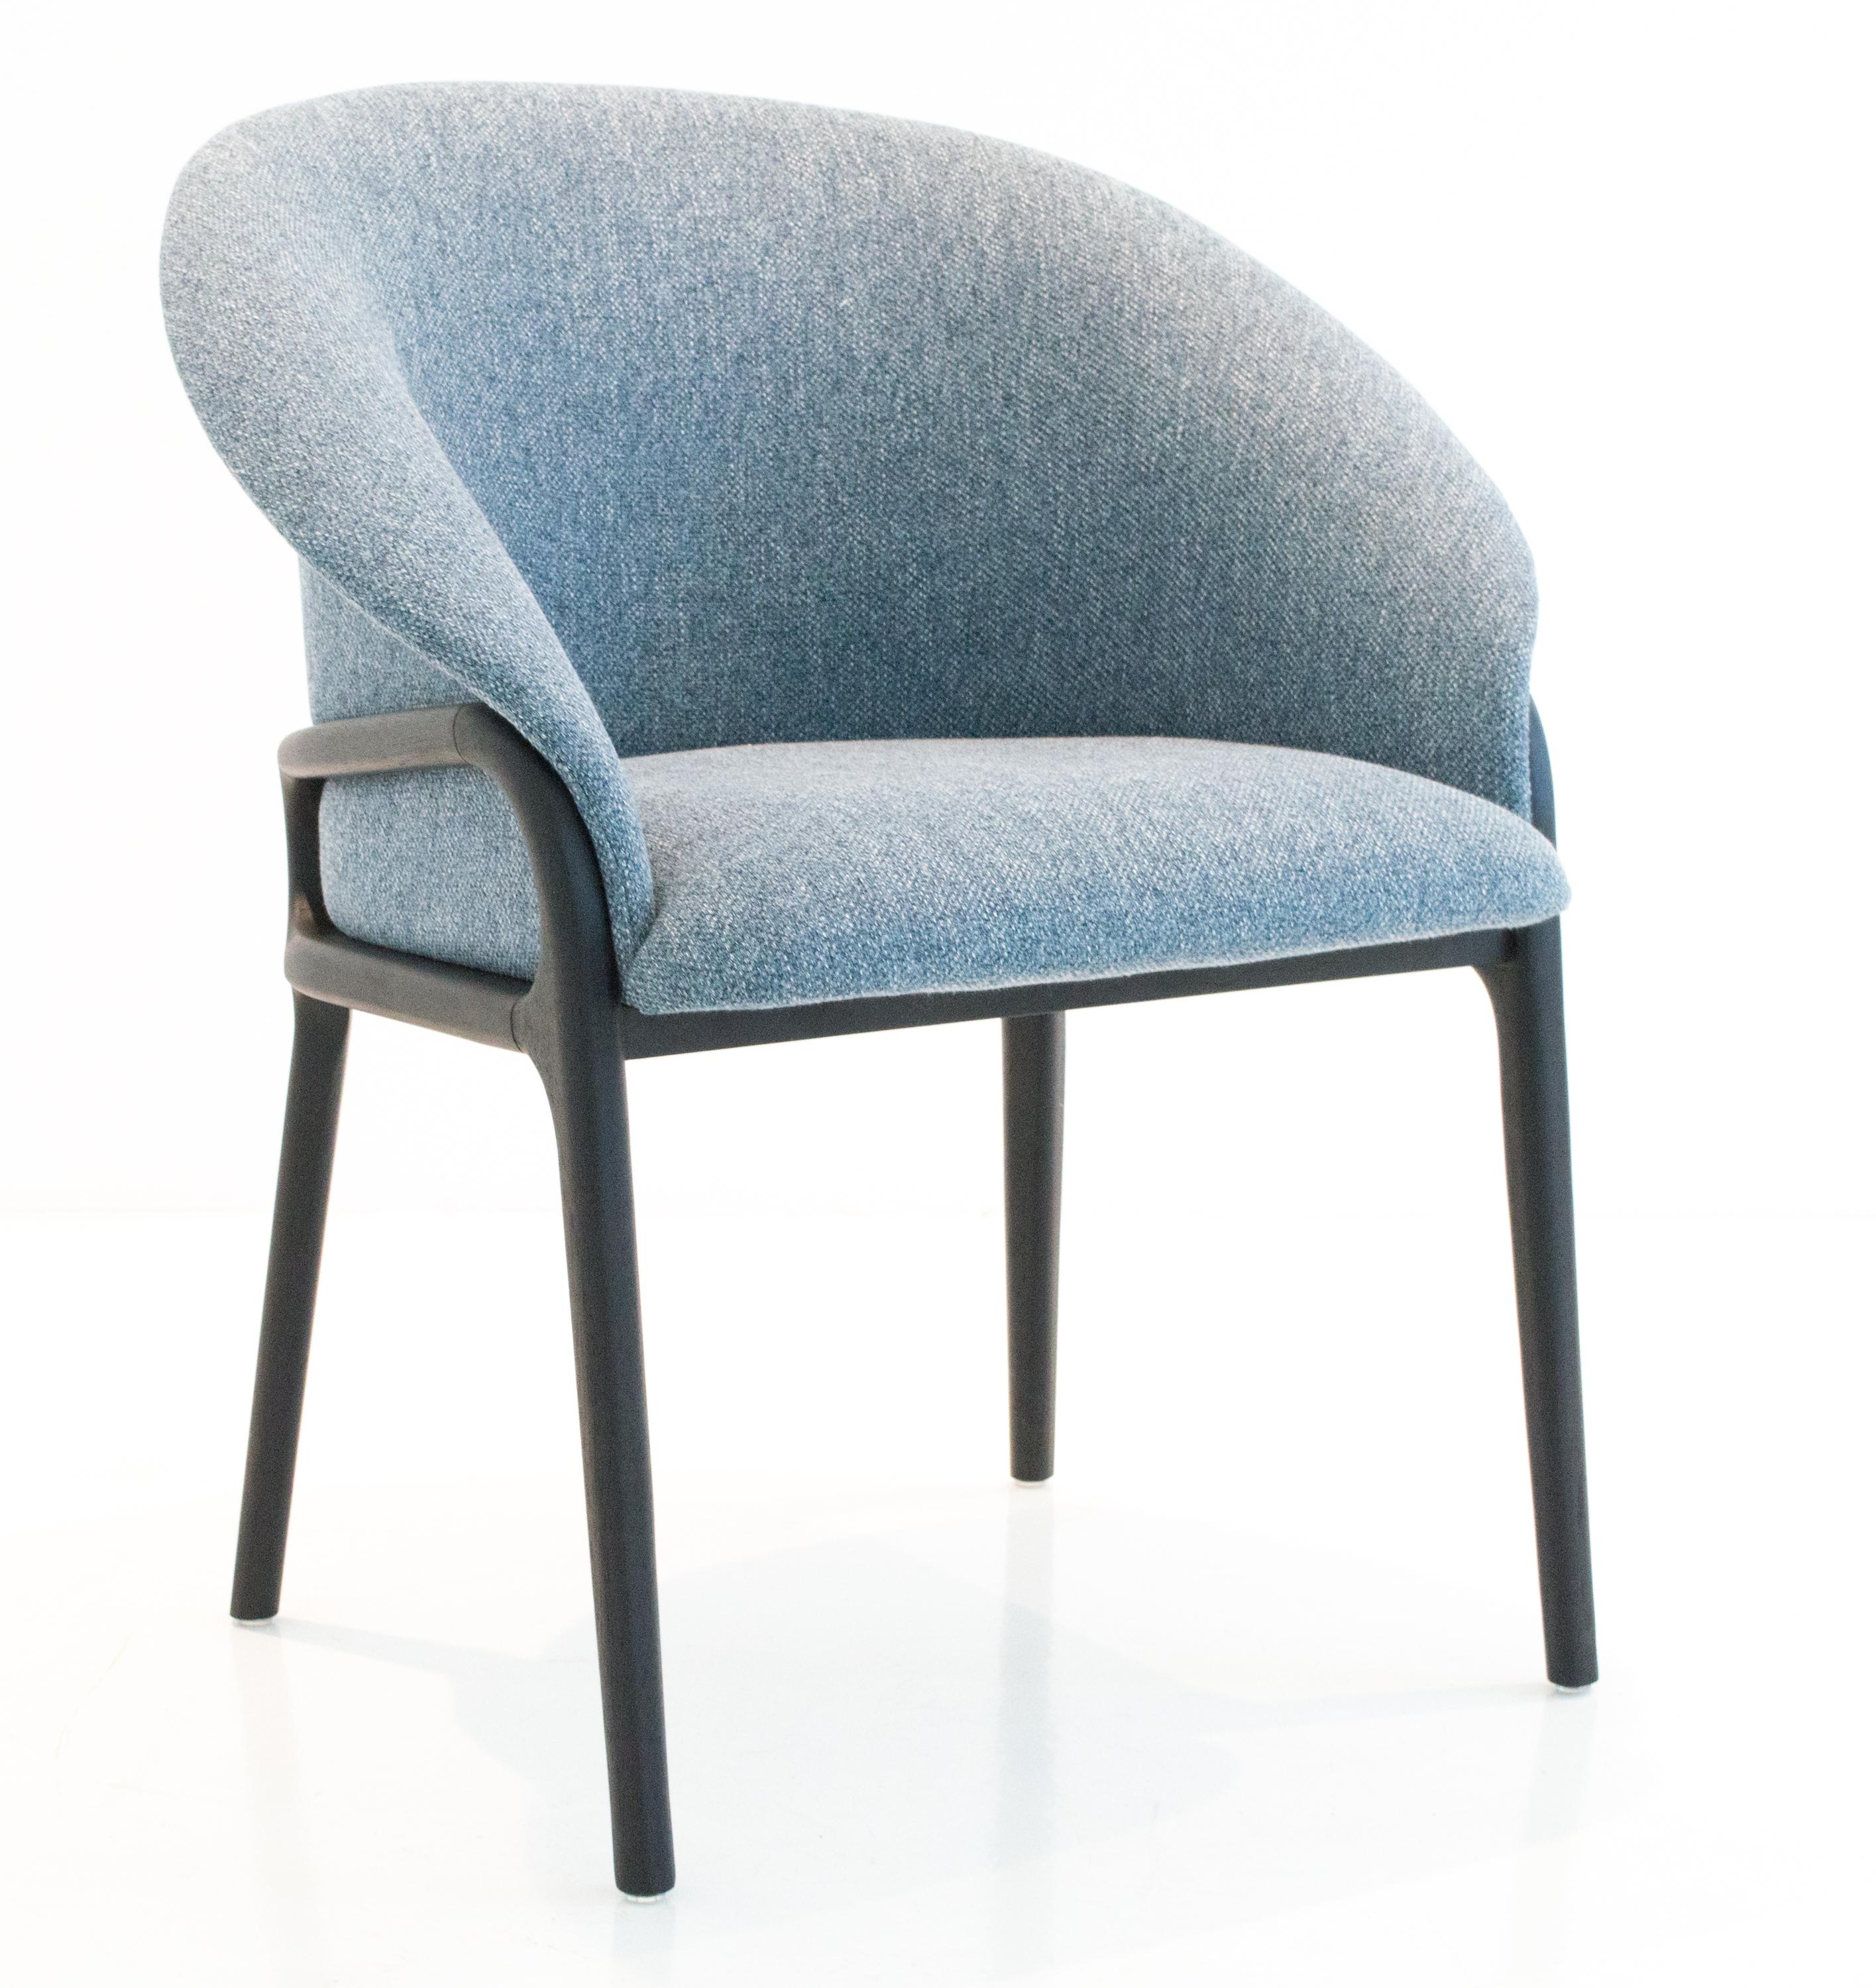 organic modern chair